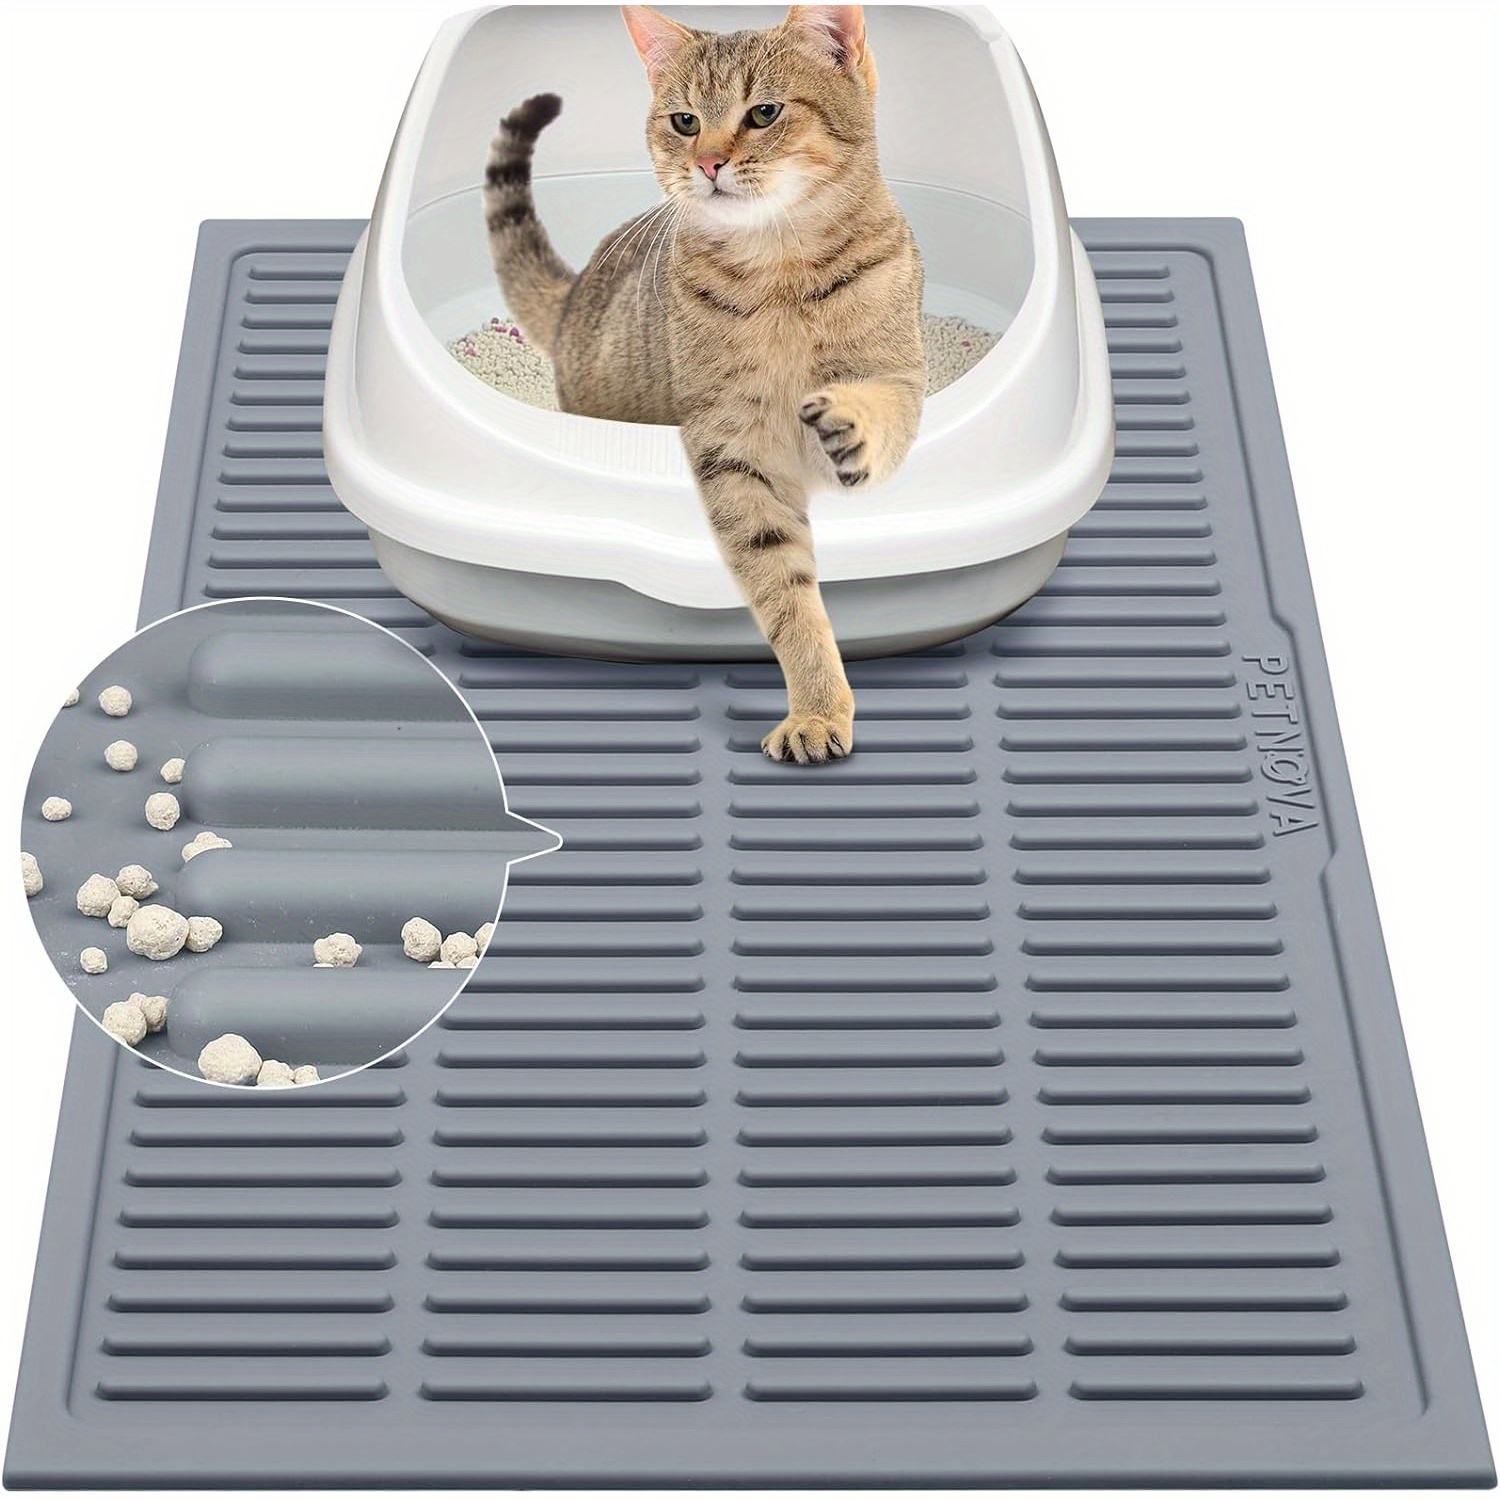 

Rubber Cat Litter Pad: Waterproof Cat Litter Trap Pad - Easy To Clean Cat Litter Trap Pad Cat Litter Mat Is Non-slip